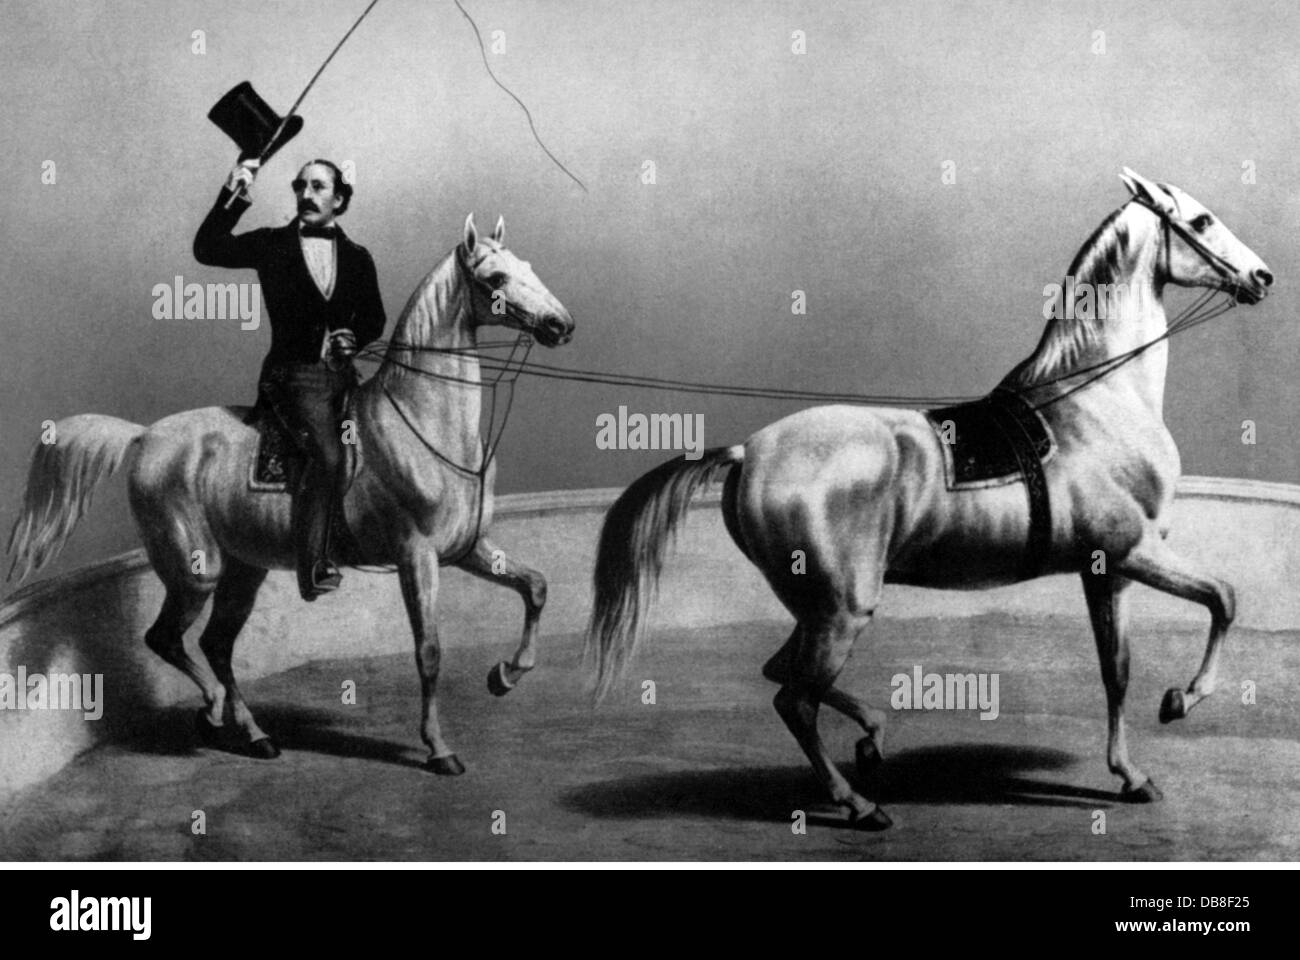 Renz, Ernst Jakob, 18.5.1815 - 3.4.1892, artiste allemand et maître d'anneau, pleine longueur, avec ses chevaux Arabeska et MacDonald, lithographie d'Ernst Litfass, Berlin, vers 1850, Banque D'Images